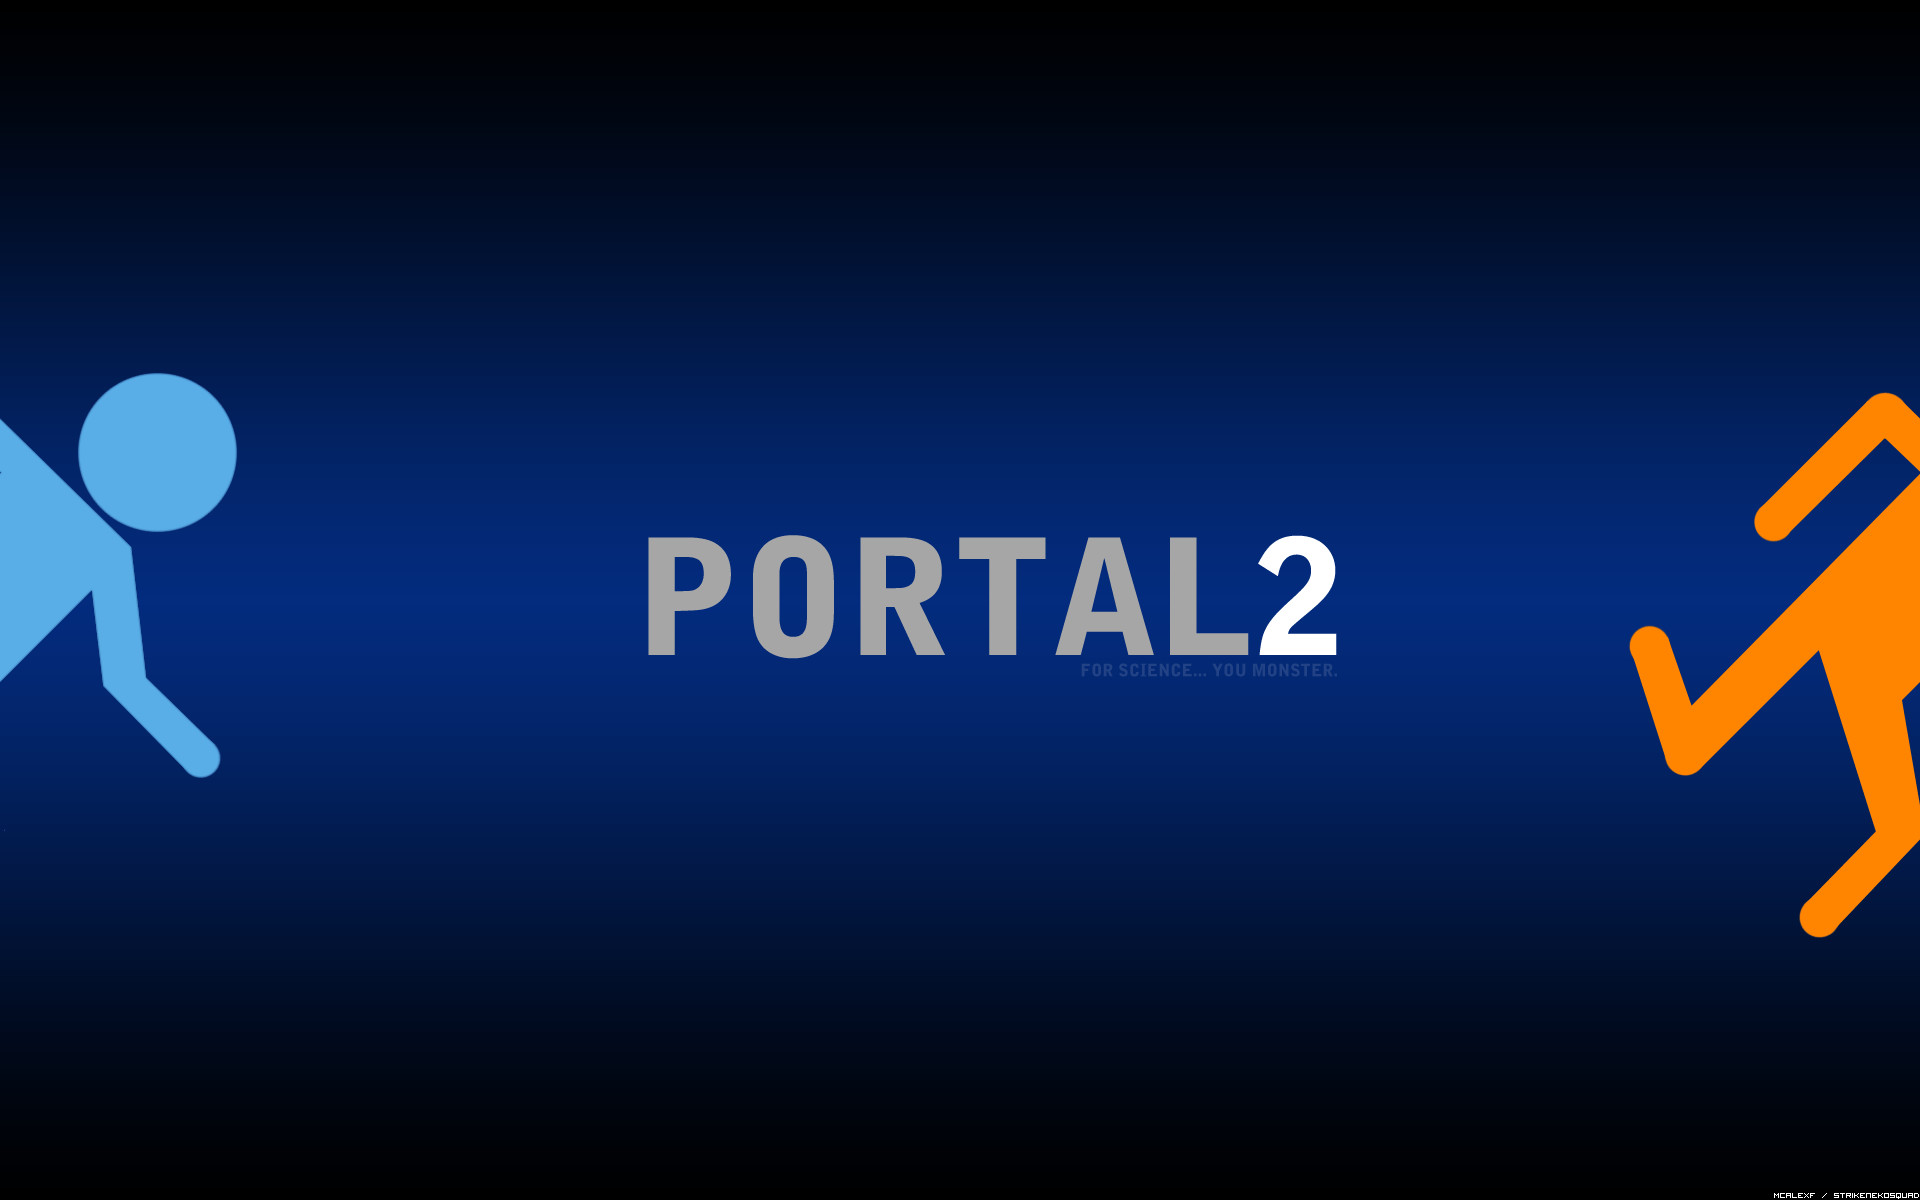 Portal desktop. Портал 2. Обои портал. Portal обои. Portal 2 Wallpaper.